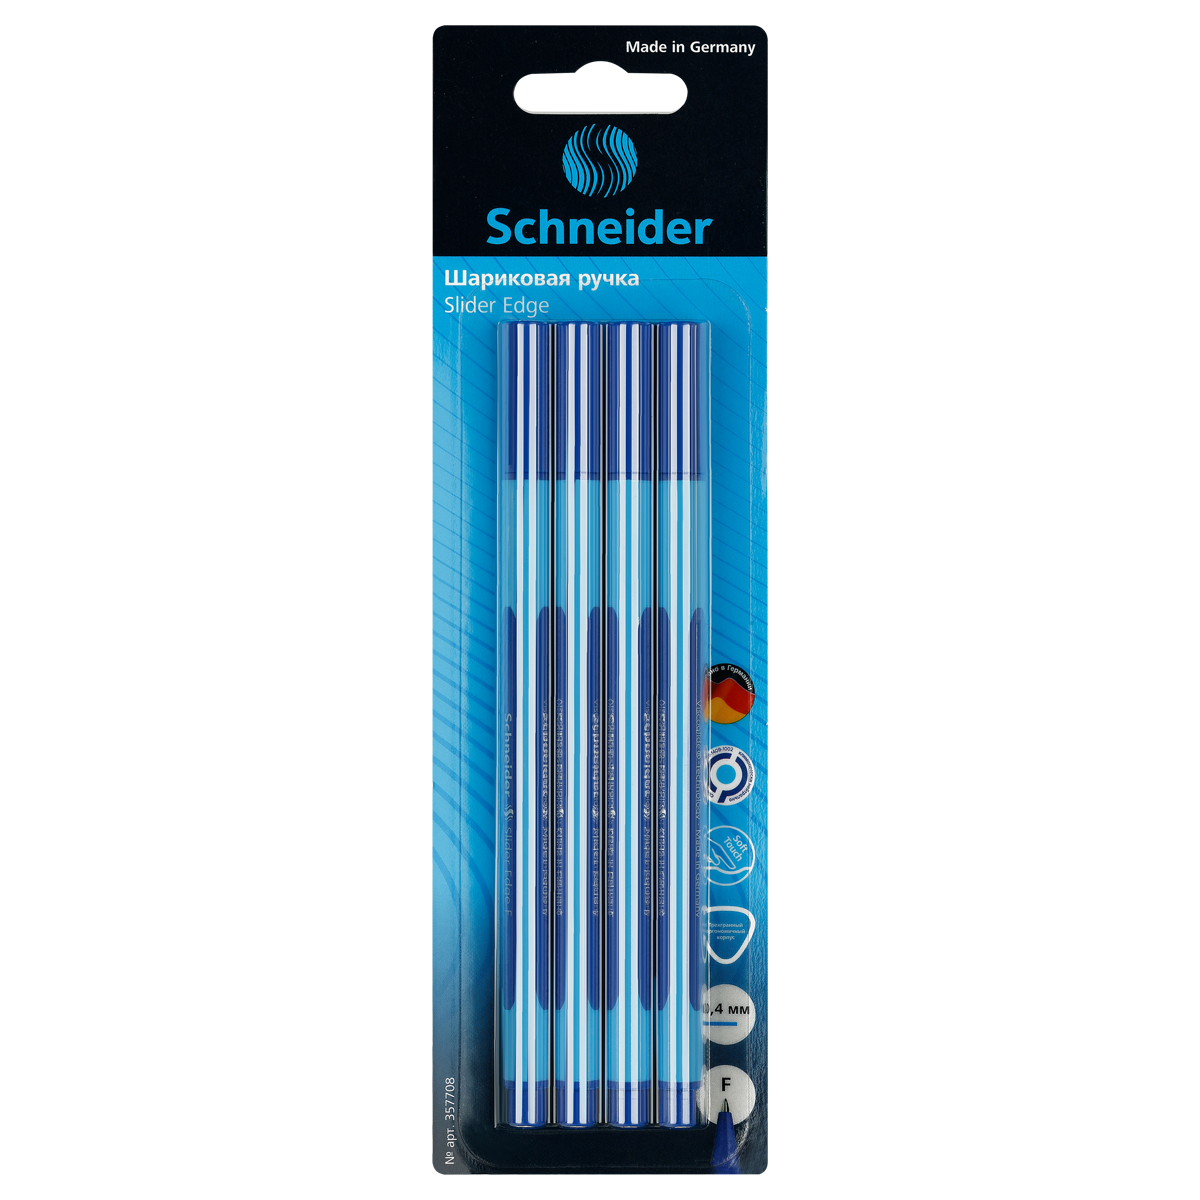 Ручки шарик. Schneider Slider Edge F 4шт. синие 08мм трехгранный корпус блистер